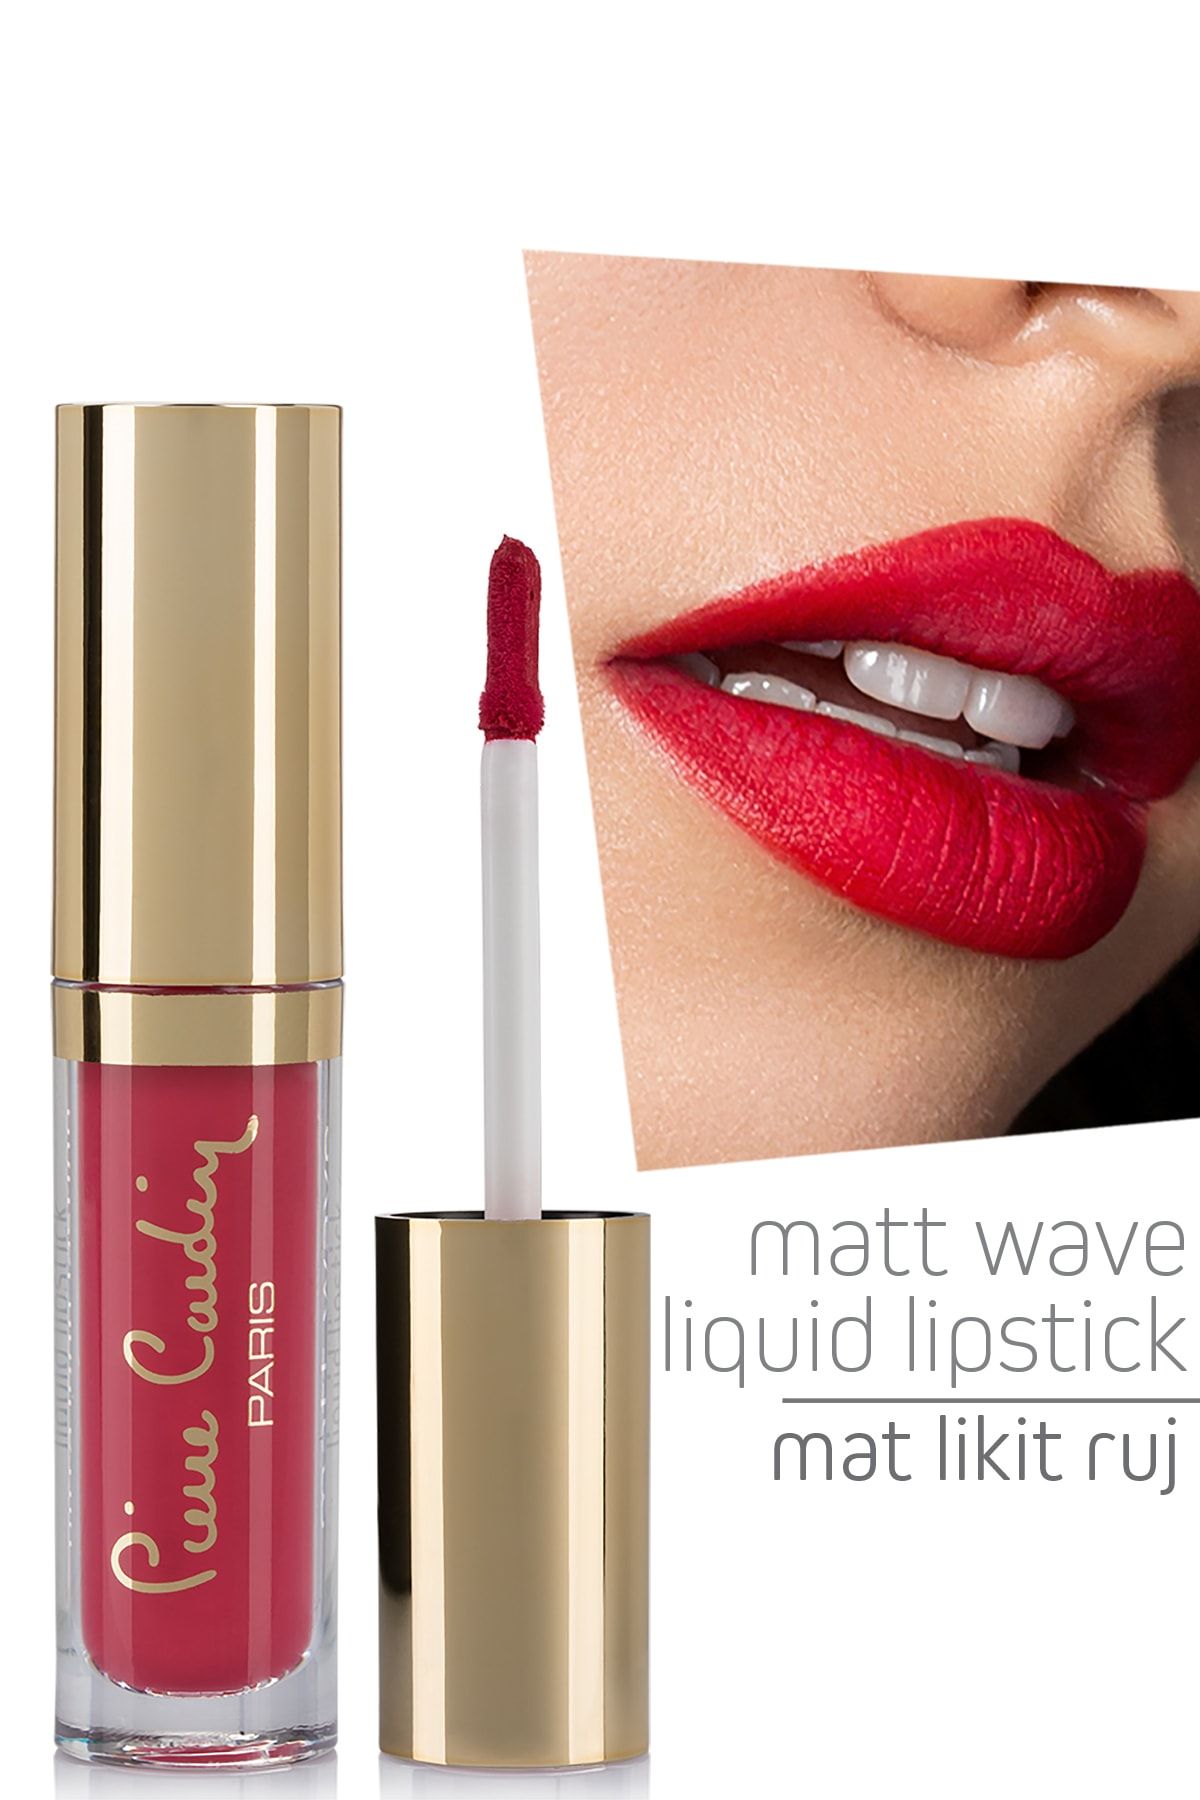 Pierre Cardin Matt Wave Liquid Lipstick – Mat Likit Ruj - Vermilion